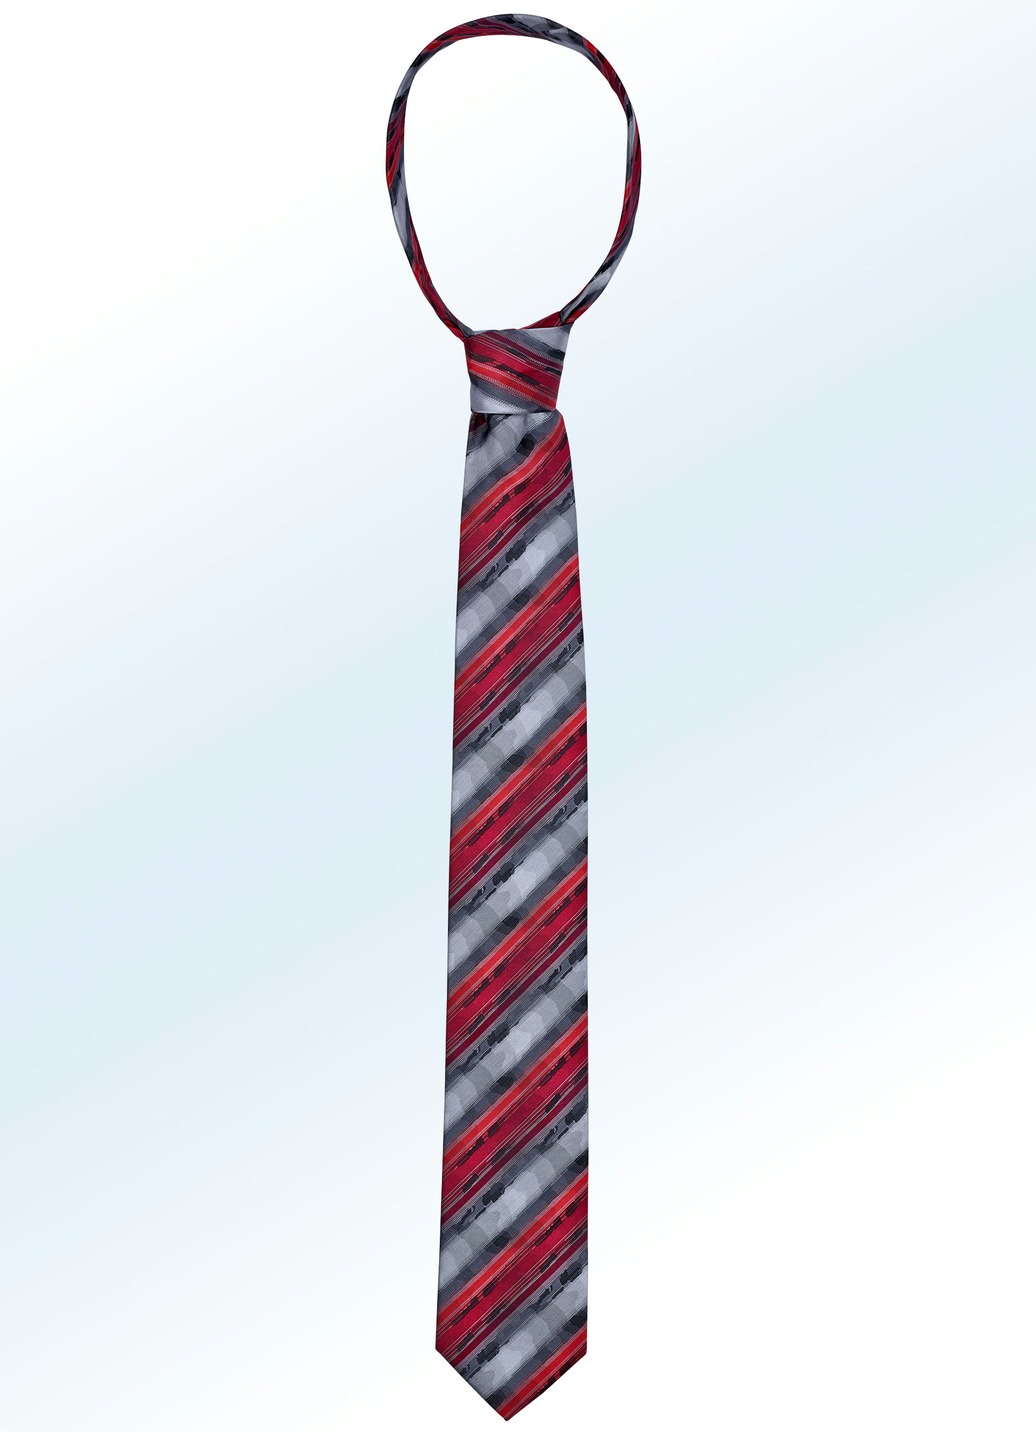 Ausdrucksvoll gestreifte Krawatte, Bordeaux-Dunkelgrau-Mittelgrau-Rot Gestreift von BADER